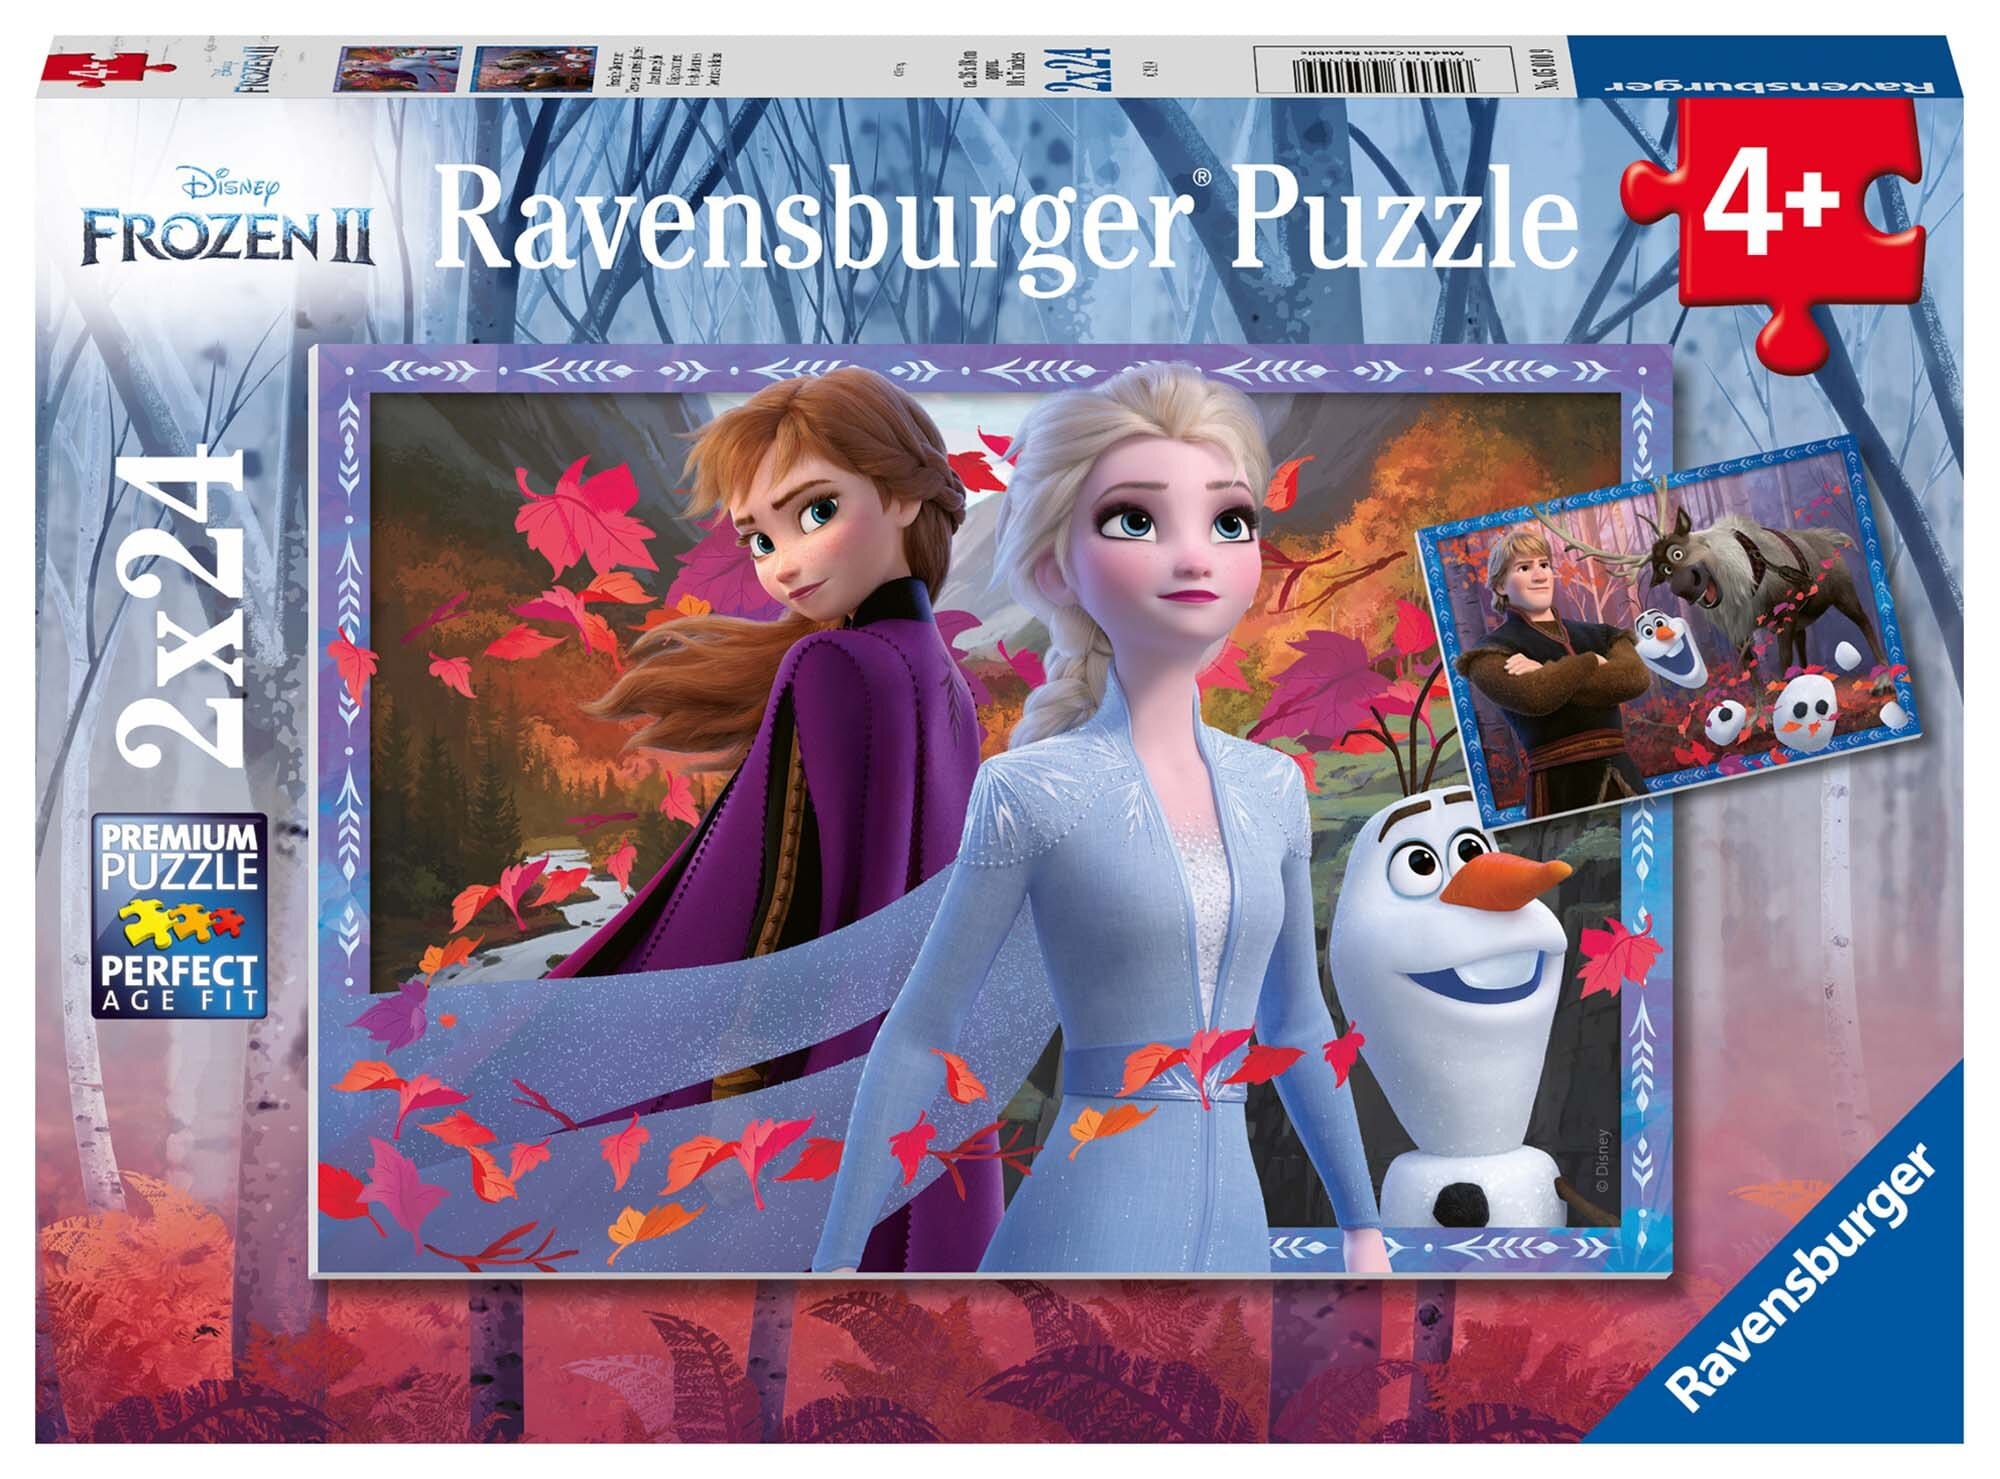 Ravensburger Puzzle - Frostige Aventeuer 2x24 Teile